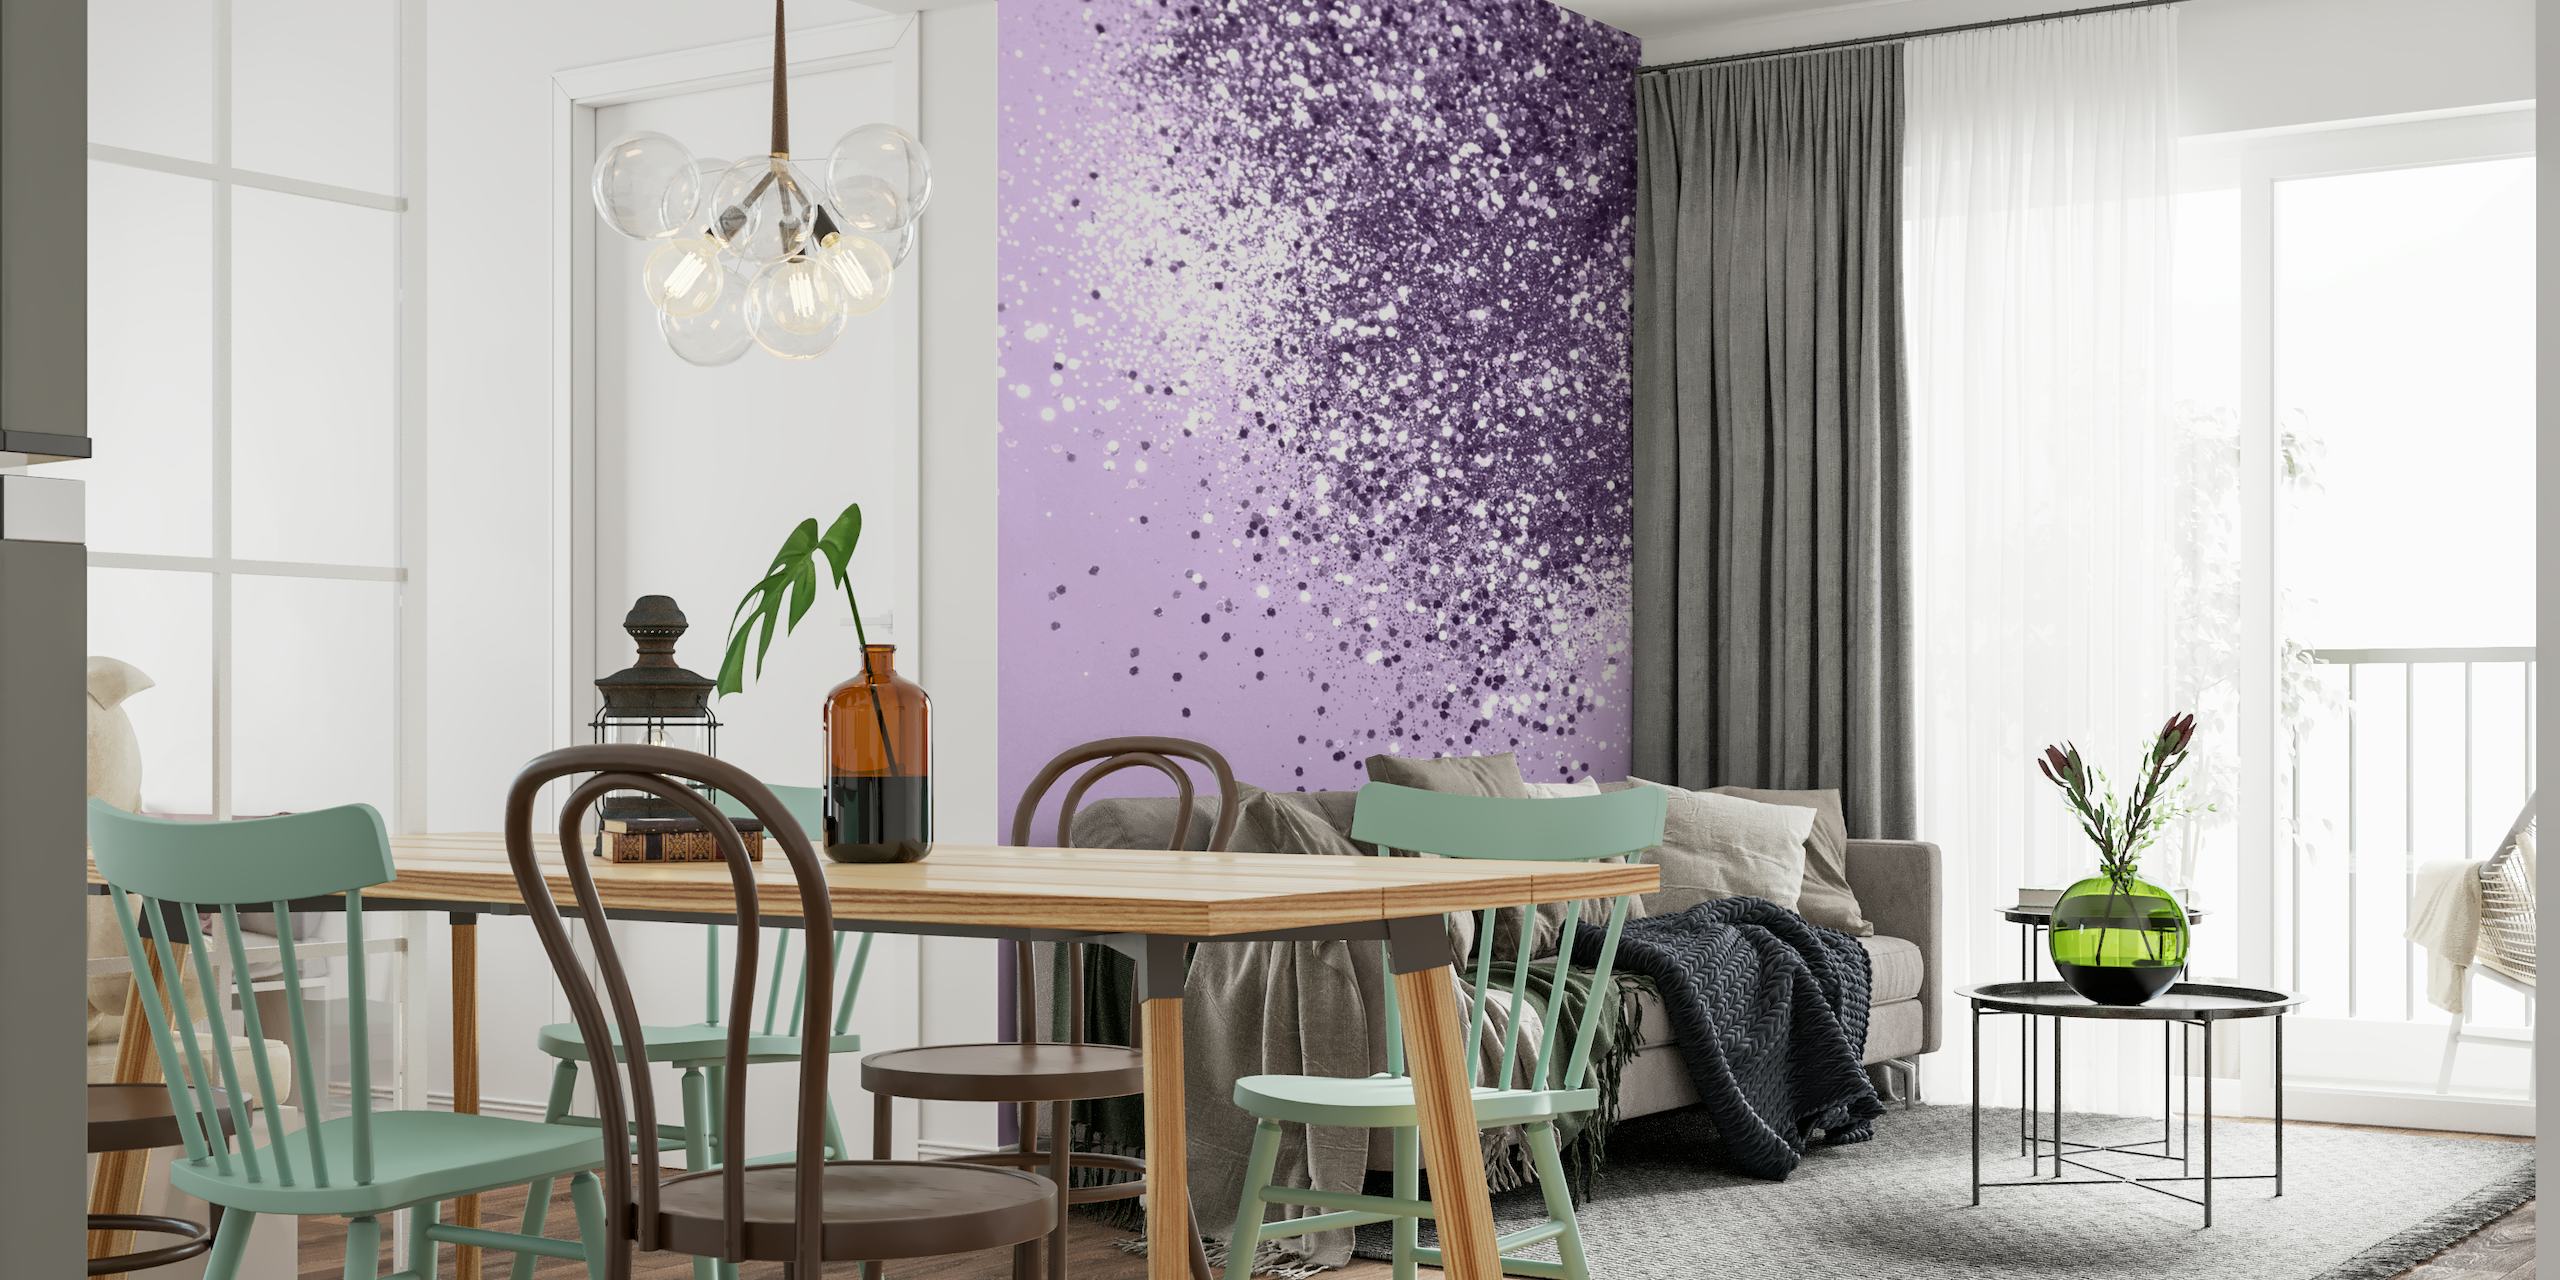 Sprankelende, zachte lavendelkleurige glittermuurschildering die een serene en elegante sfeer creëert